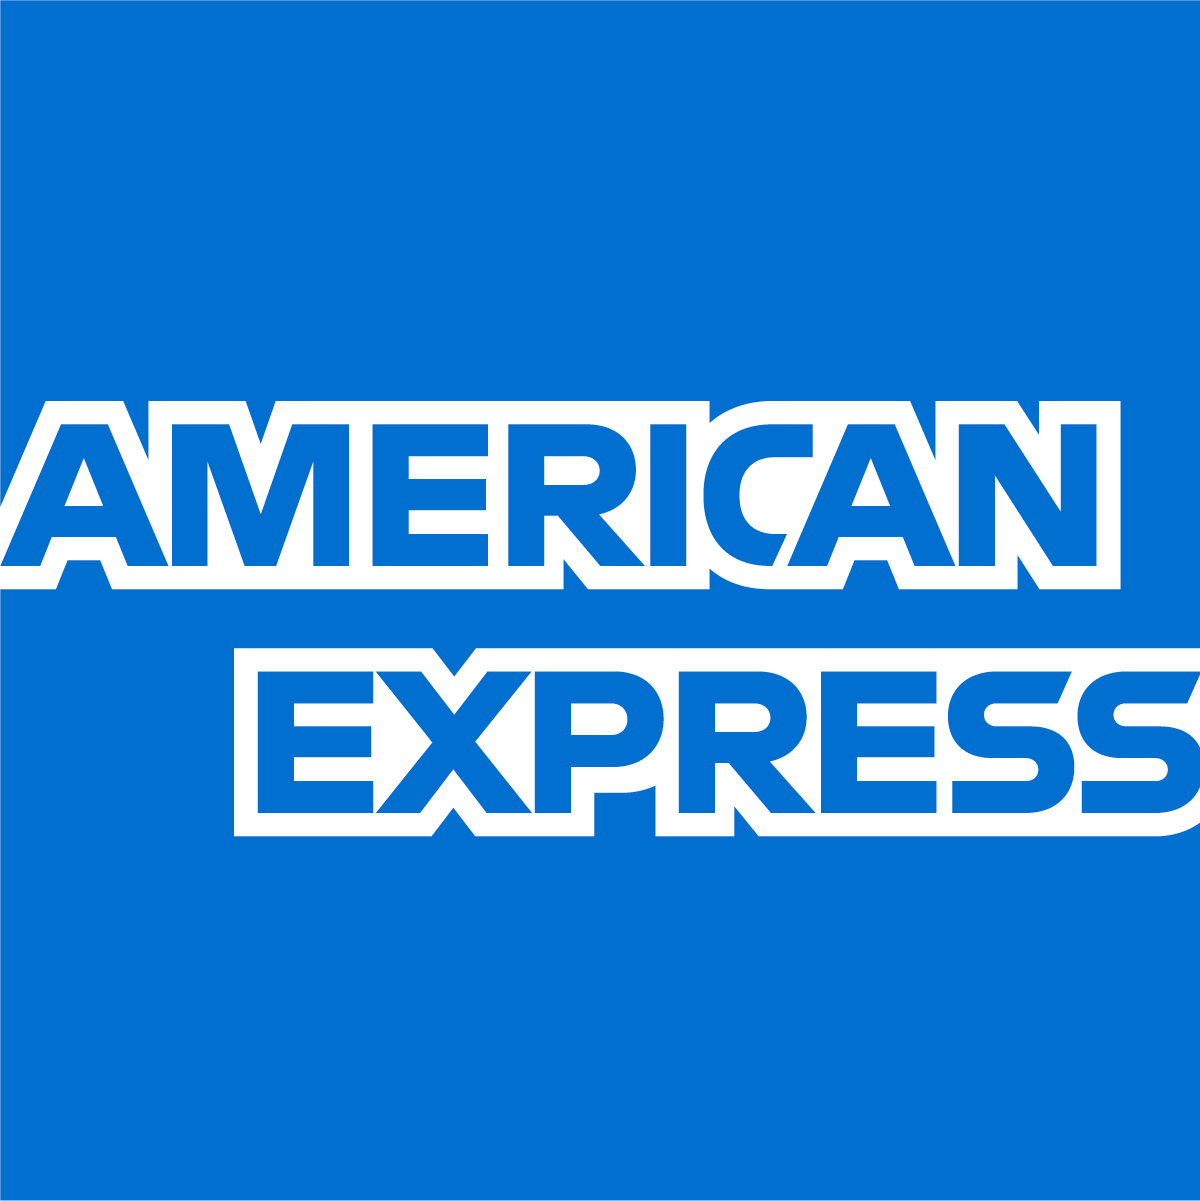 Image of American Express logo